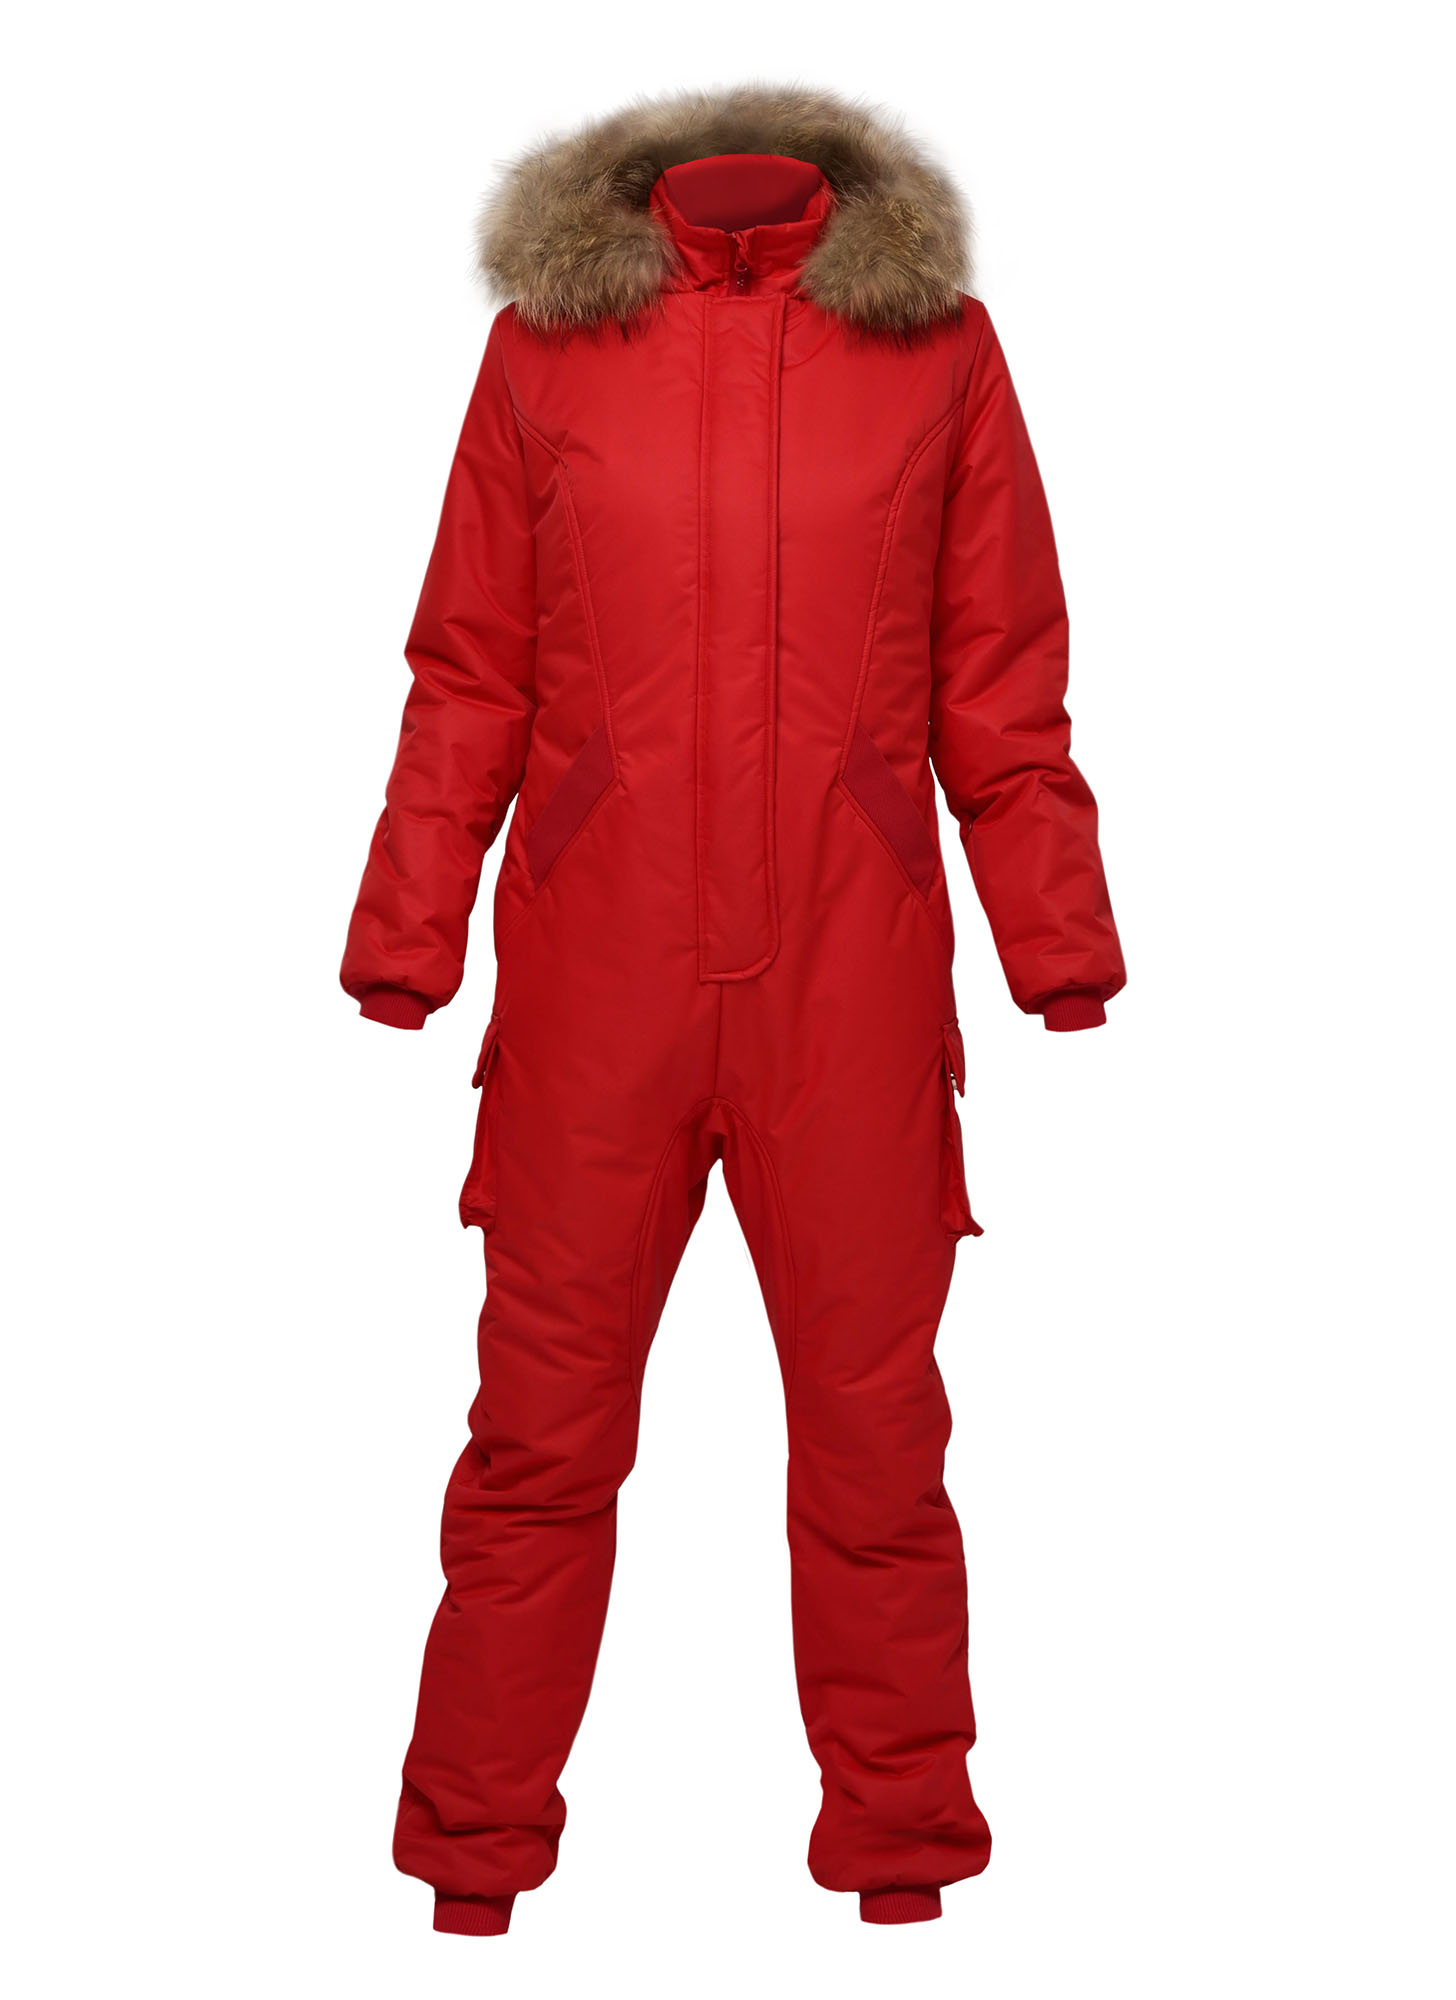 Куртка, пальто или комбинезон: в чем лучше гулять зимой, чтобы выглядеть красиво, и не замерзнуть